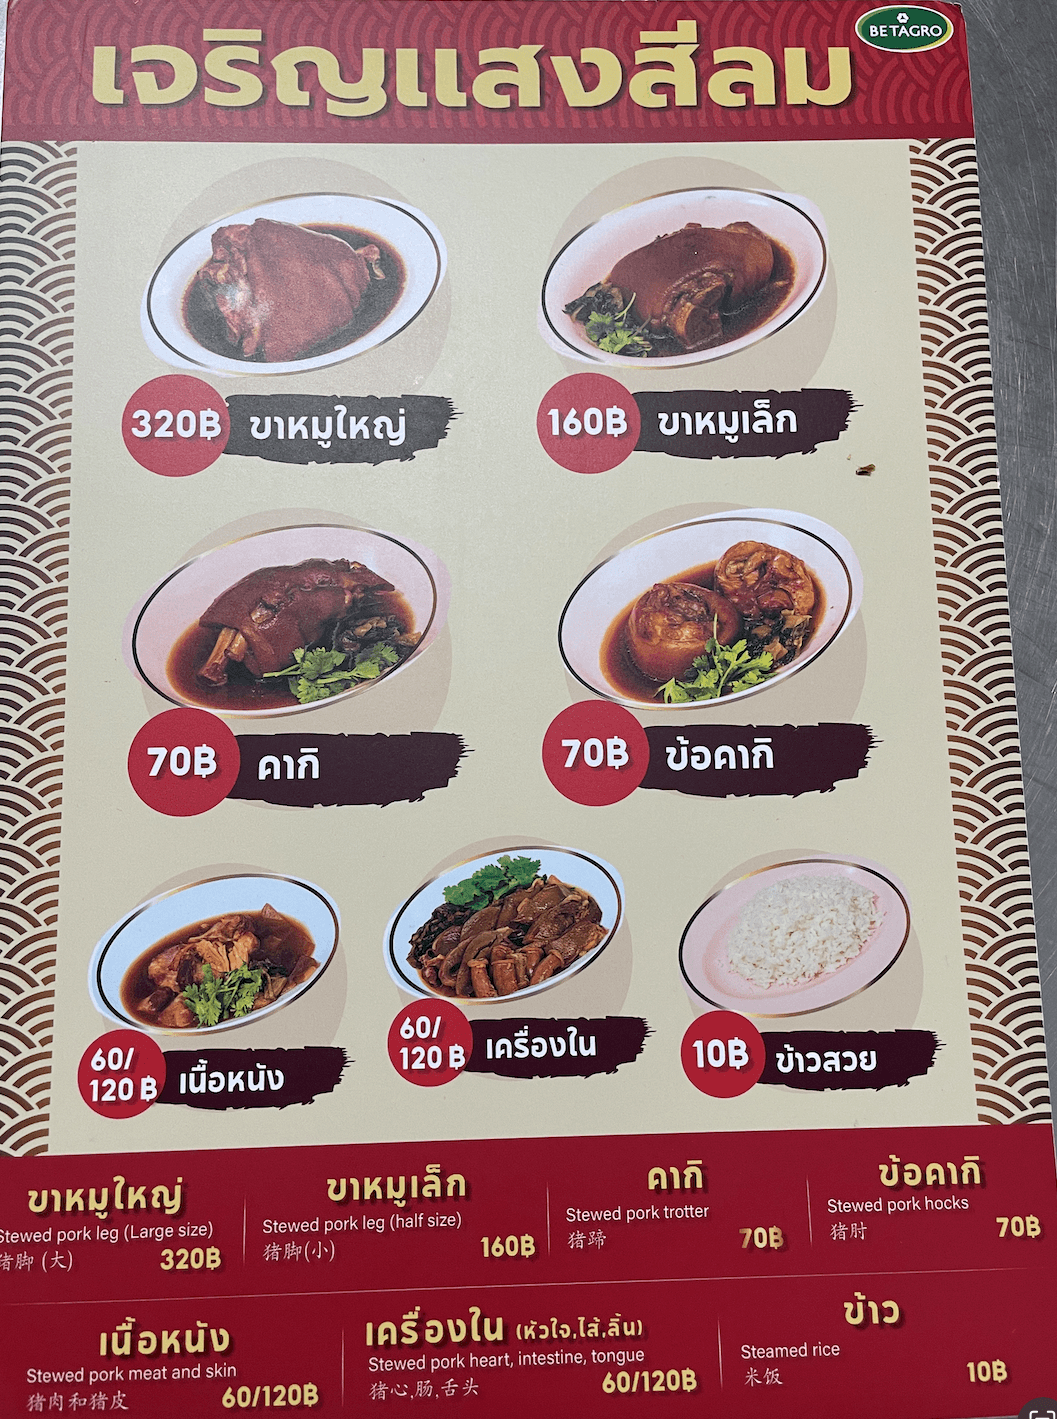 曼谷米其林一條街
石龍軍路Charoen Krung Road
必吃美食老店推薦
 Charoen Sang Silom 豬腳飯（เจริญแสงสีลม）